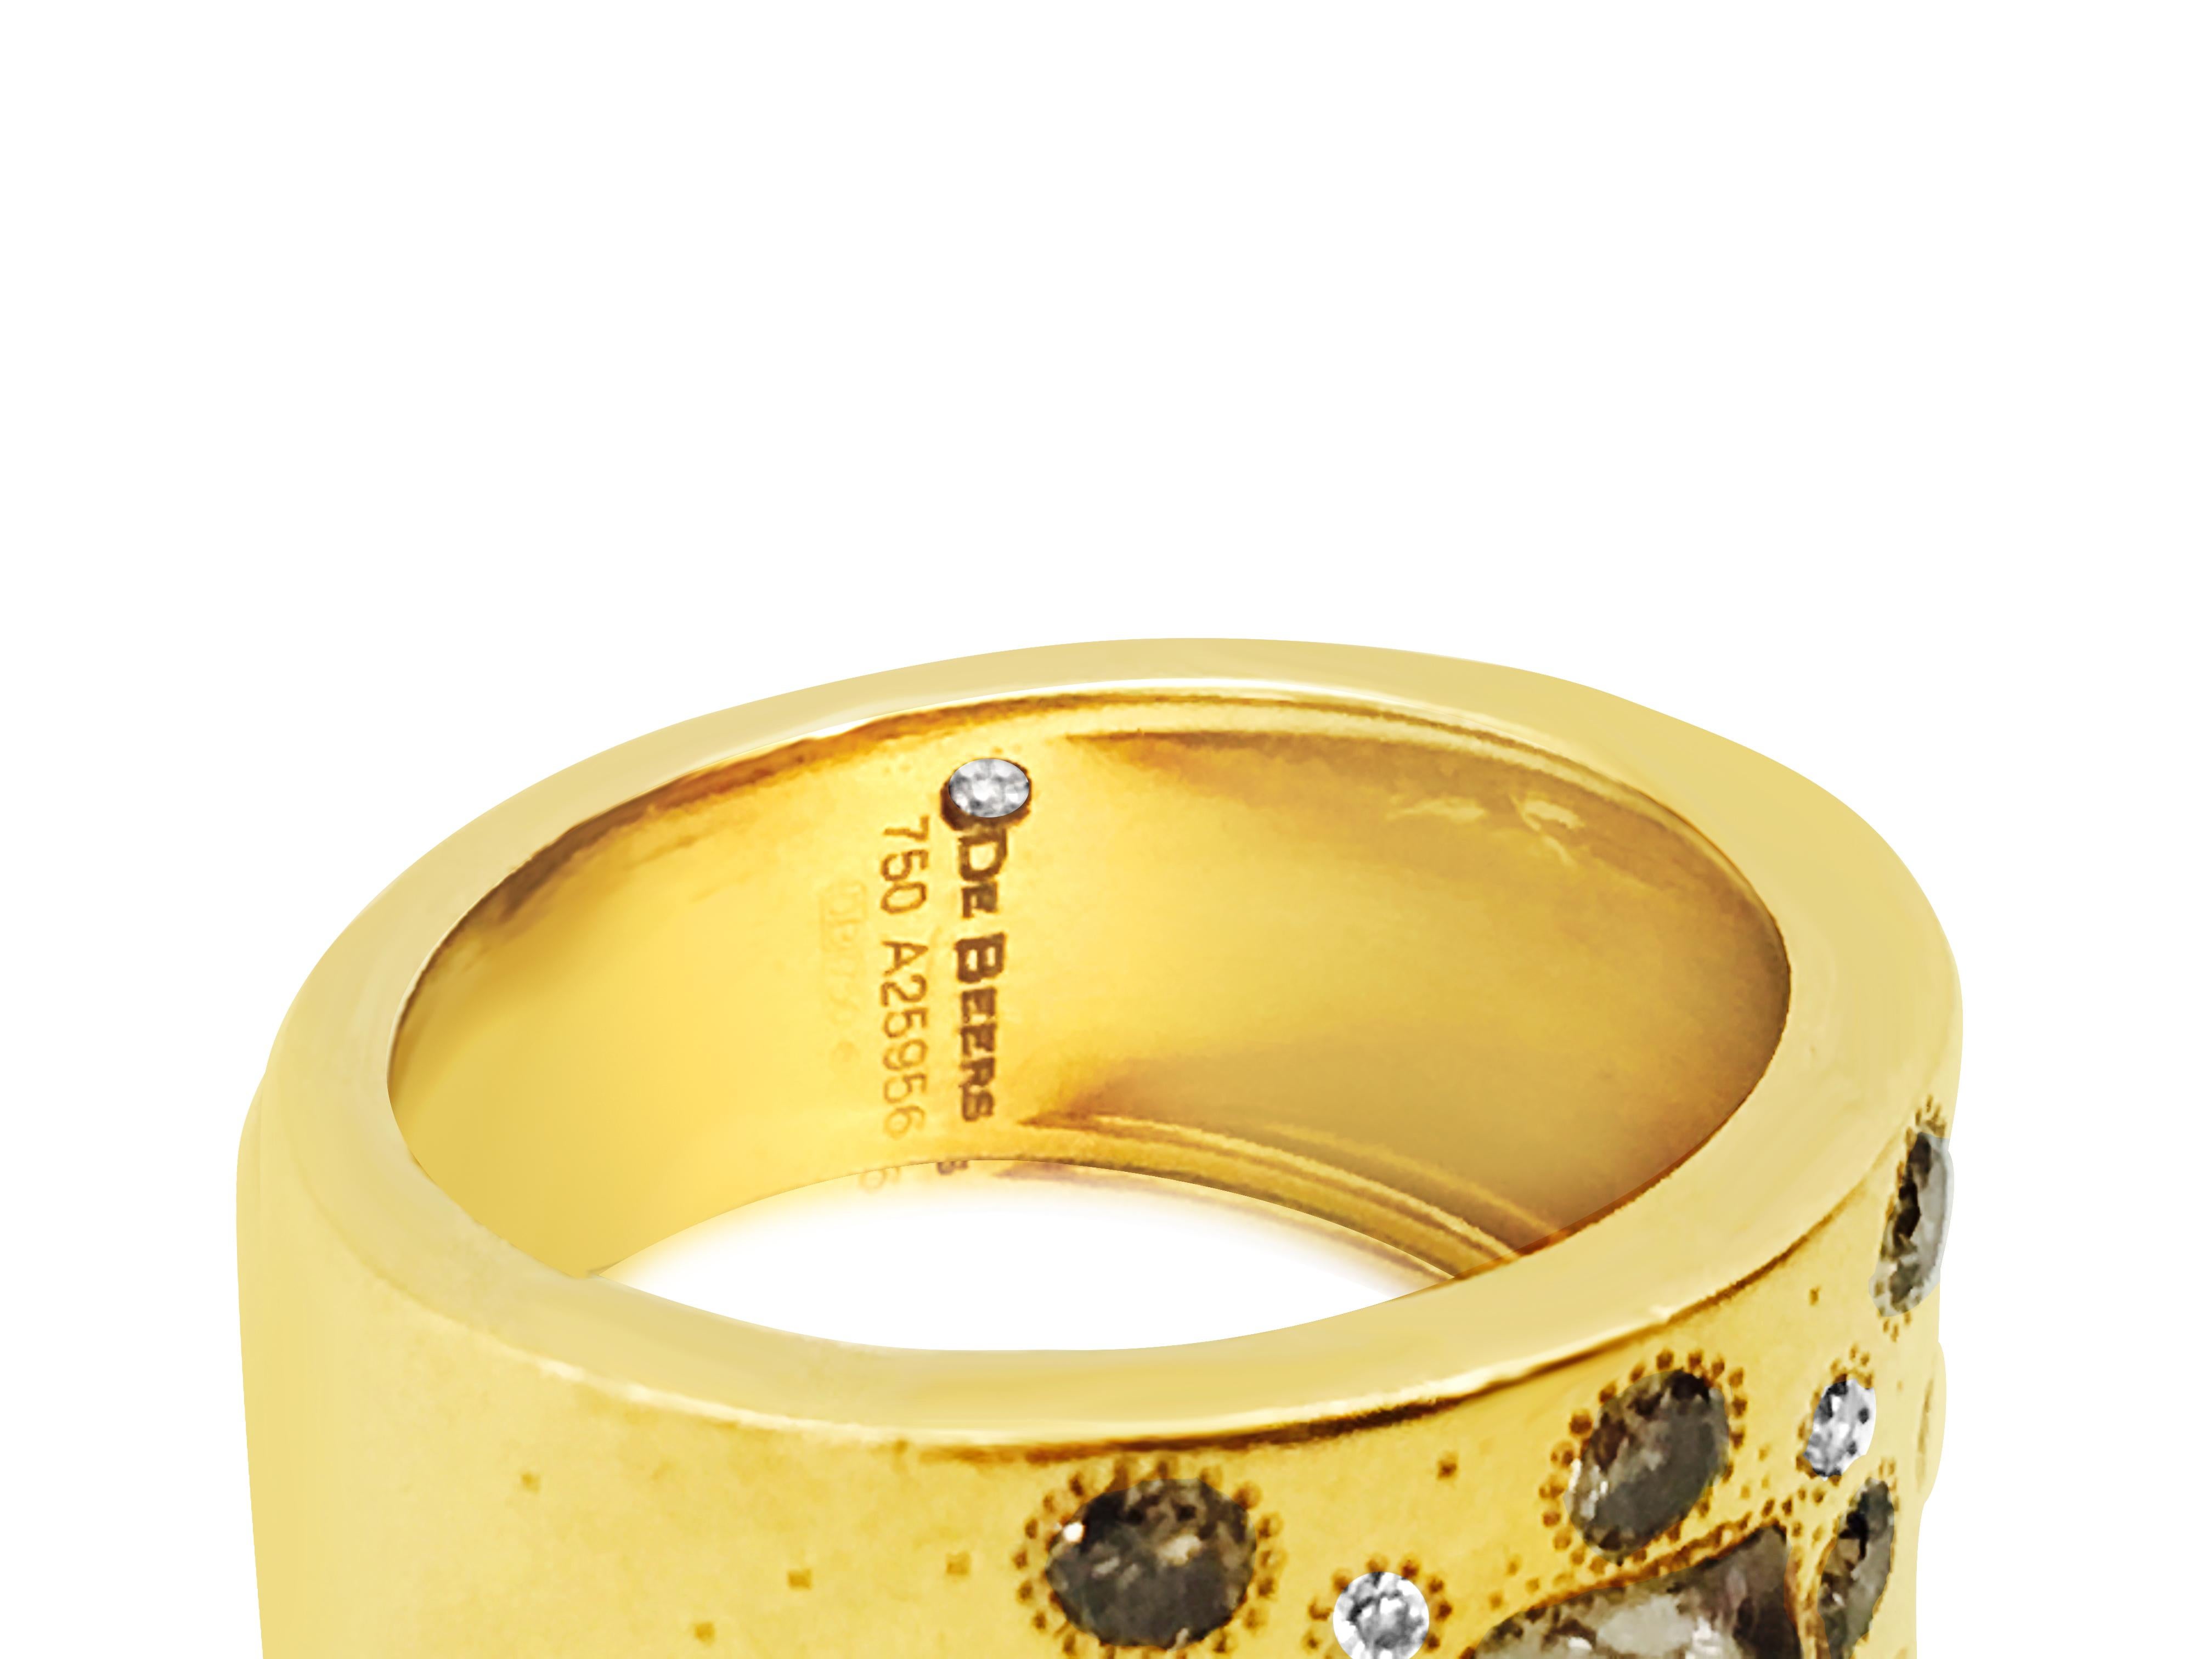 Forgée en or jaune 18 carats, cette bague de la collection Talisman de De Beers est ornée d'un diamant brut au centre, accompagné de diamants ronds de taille brillant et de diamants de couleur fantaisie, tous issus de mines naturelles. Avec son